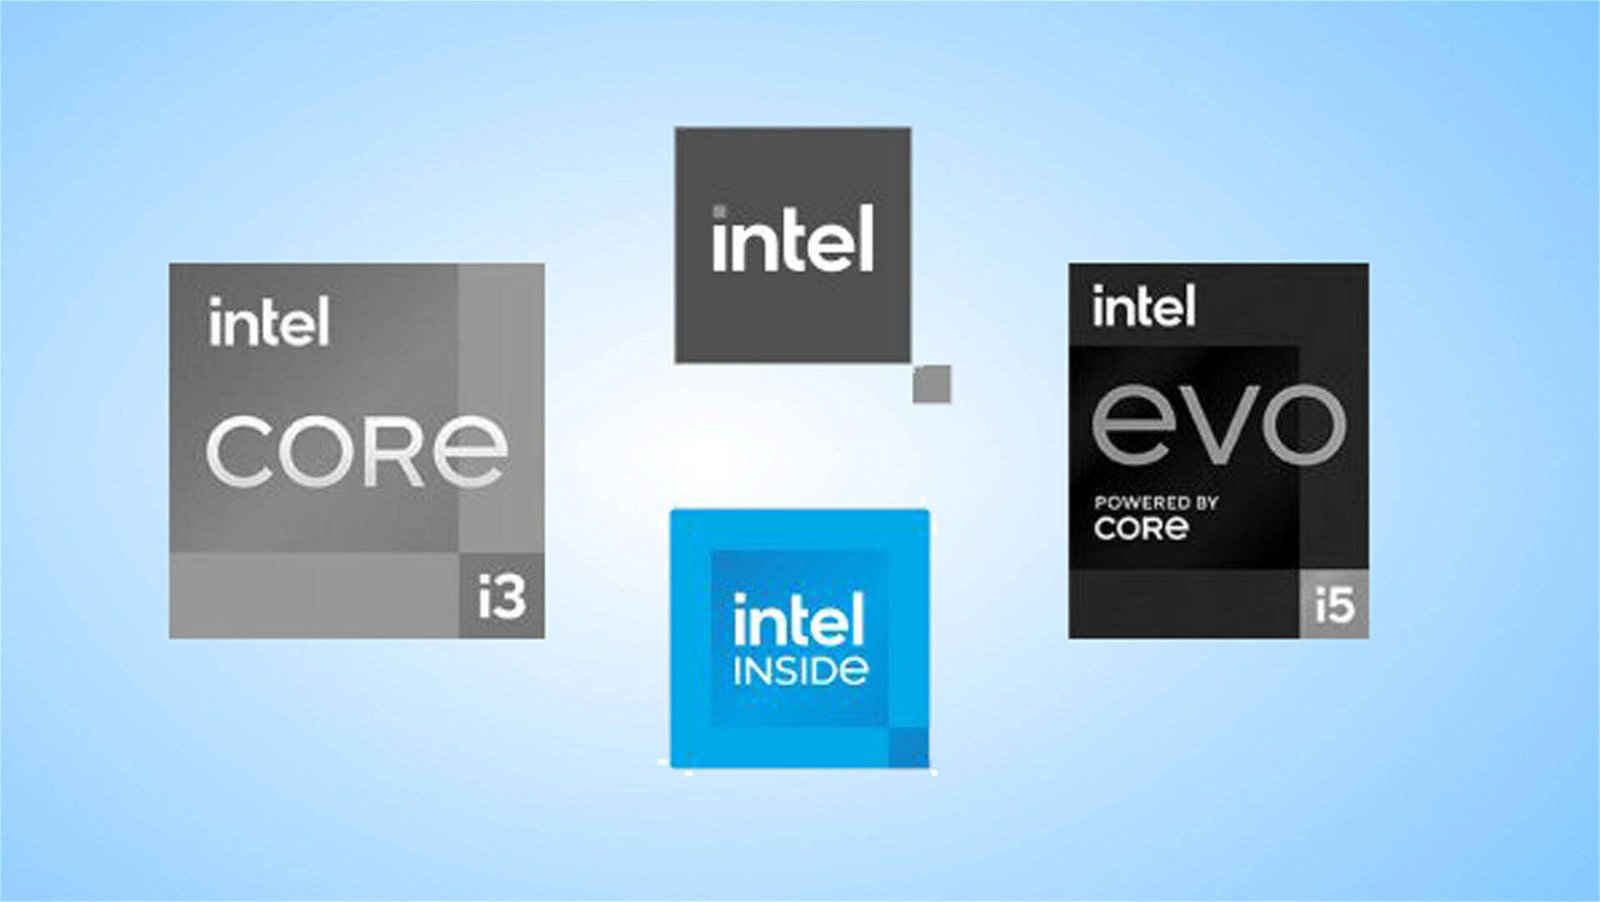 Immagine di Cambio immagine per Intel? Ecco i nuovi loghi, registrato "Evo Powered by Core"